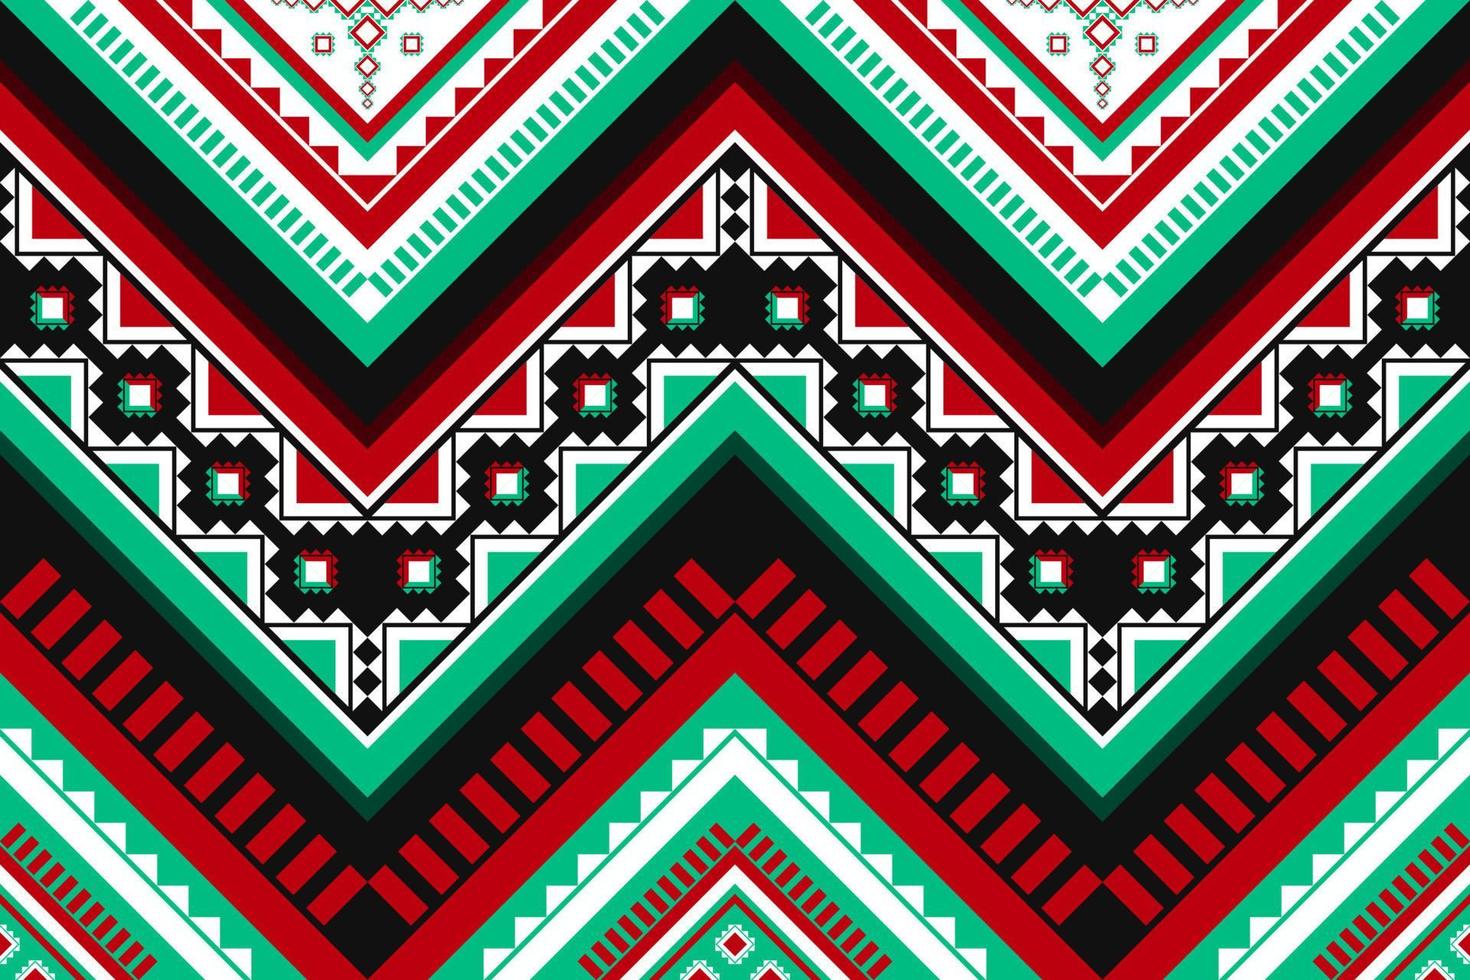 arte padrão abstrato étnico. sem costura padrão em bordados tribais, folclóricos e estilo mexicano. listrado geométrico. design para plano de fundo, papel de parede, ilustração vetorial, tecido, roupas, tapete. vetor